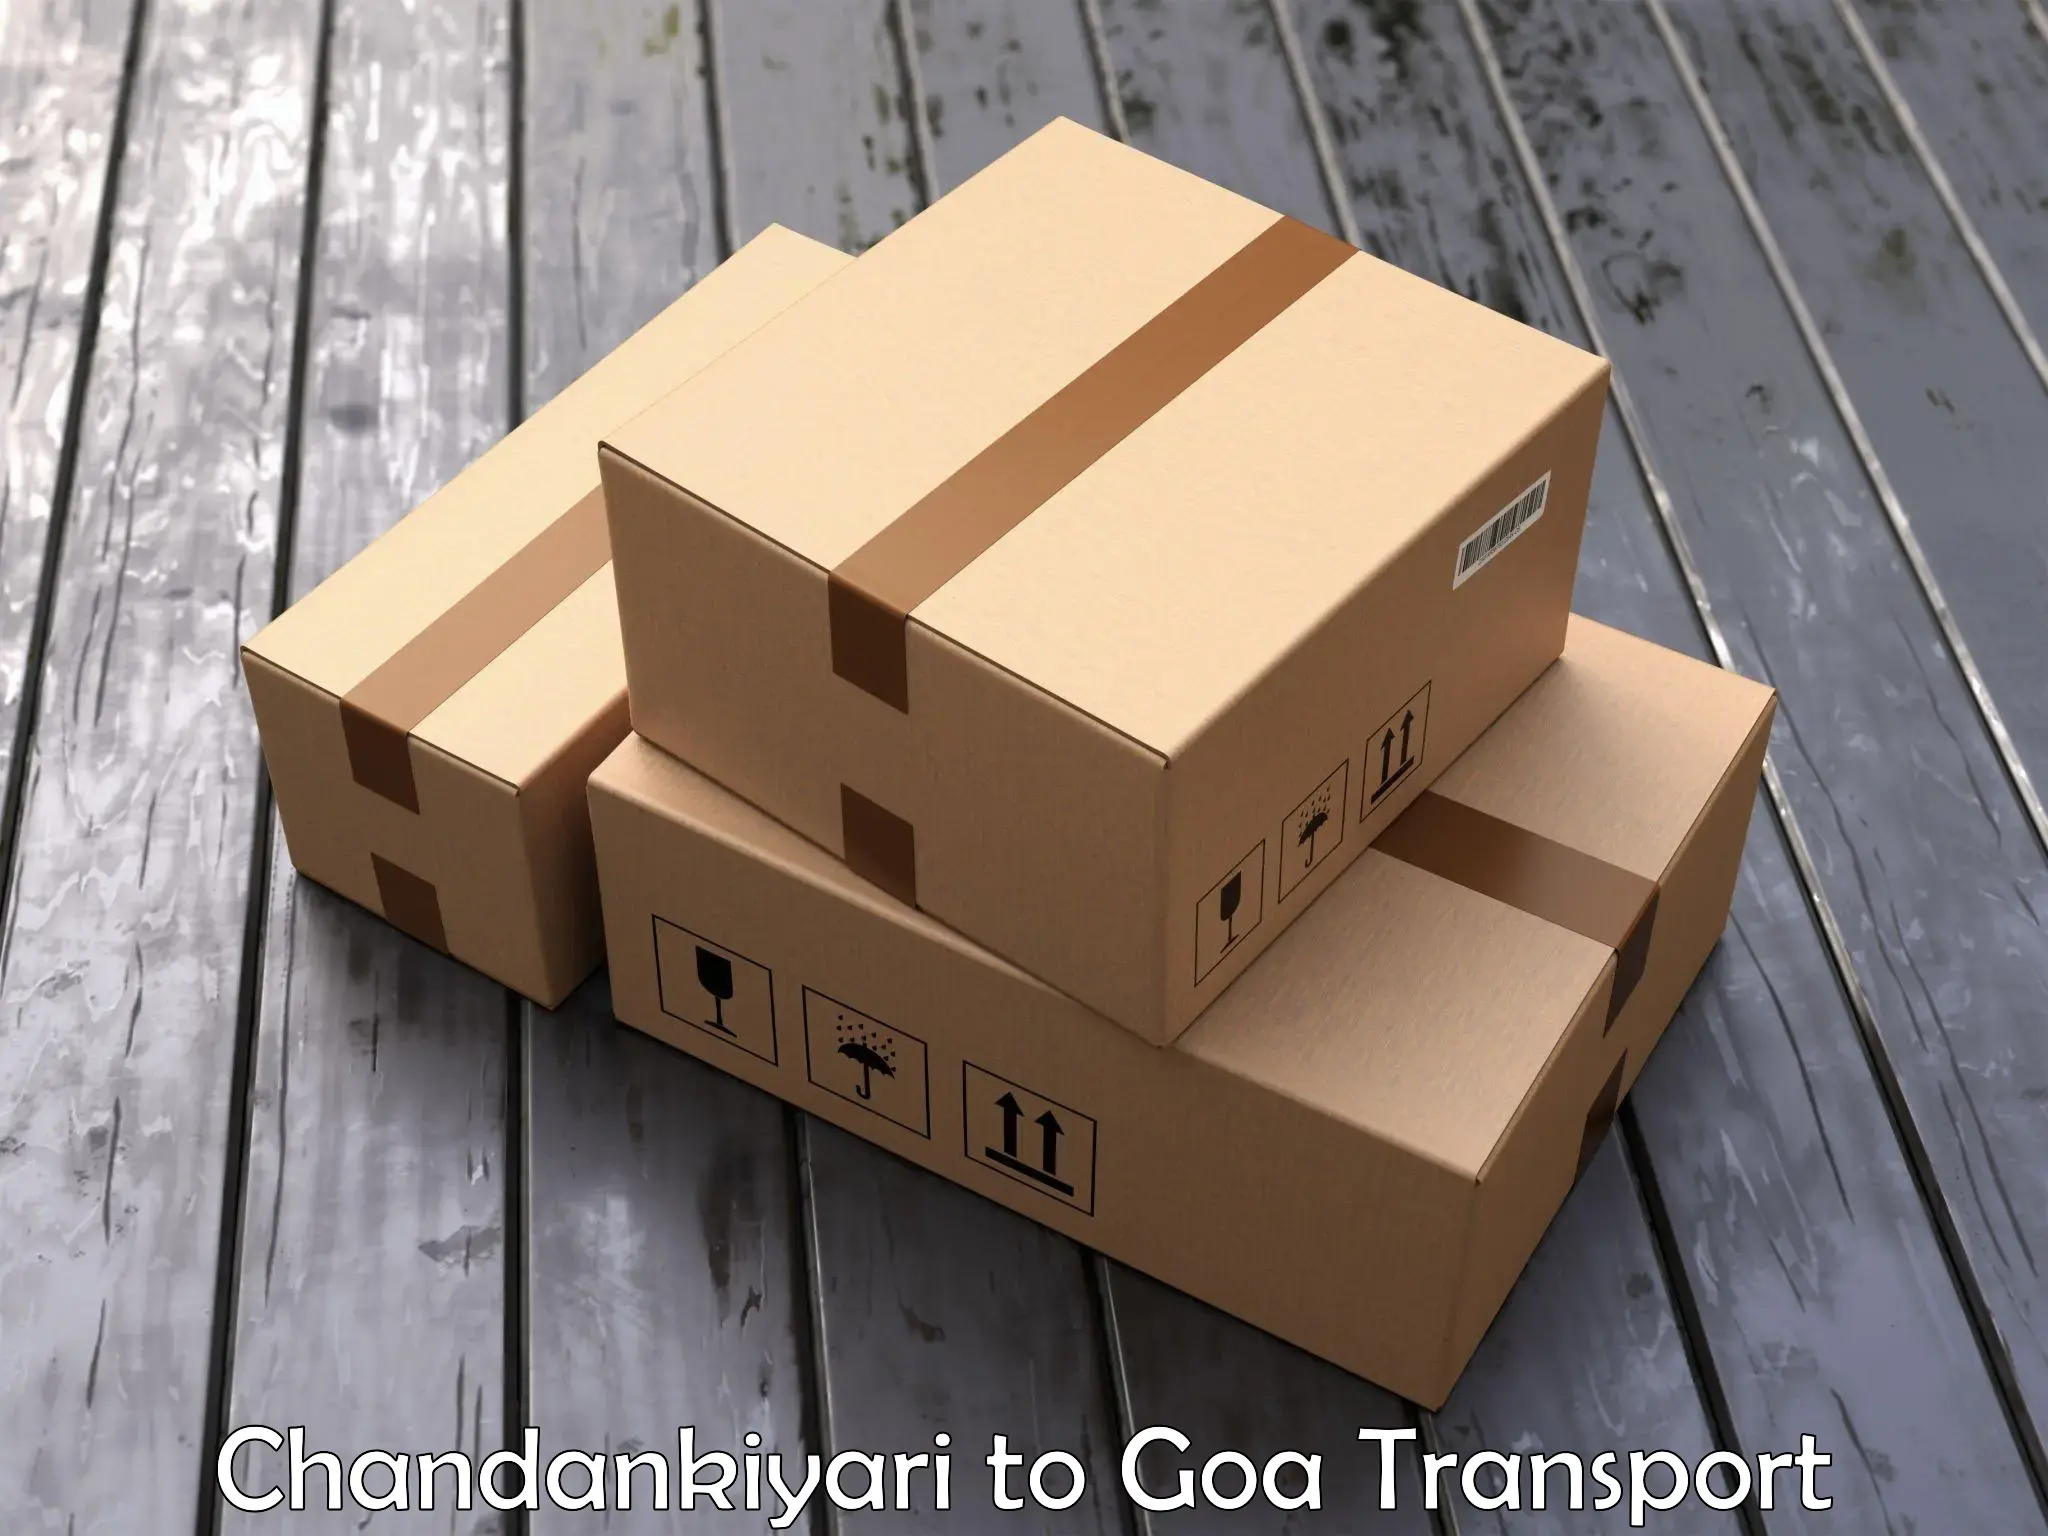 Sending bike to another city Chandankiyari to IIT Goa